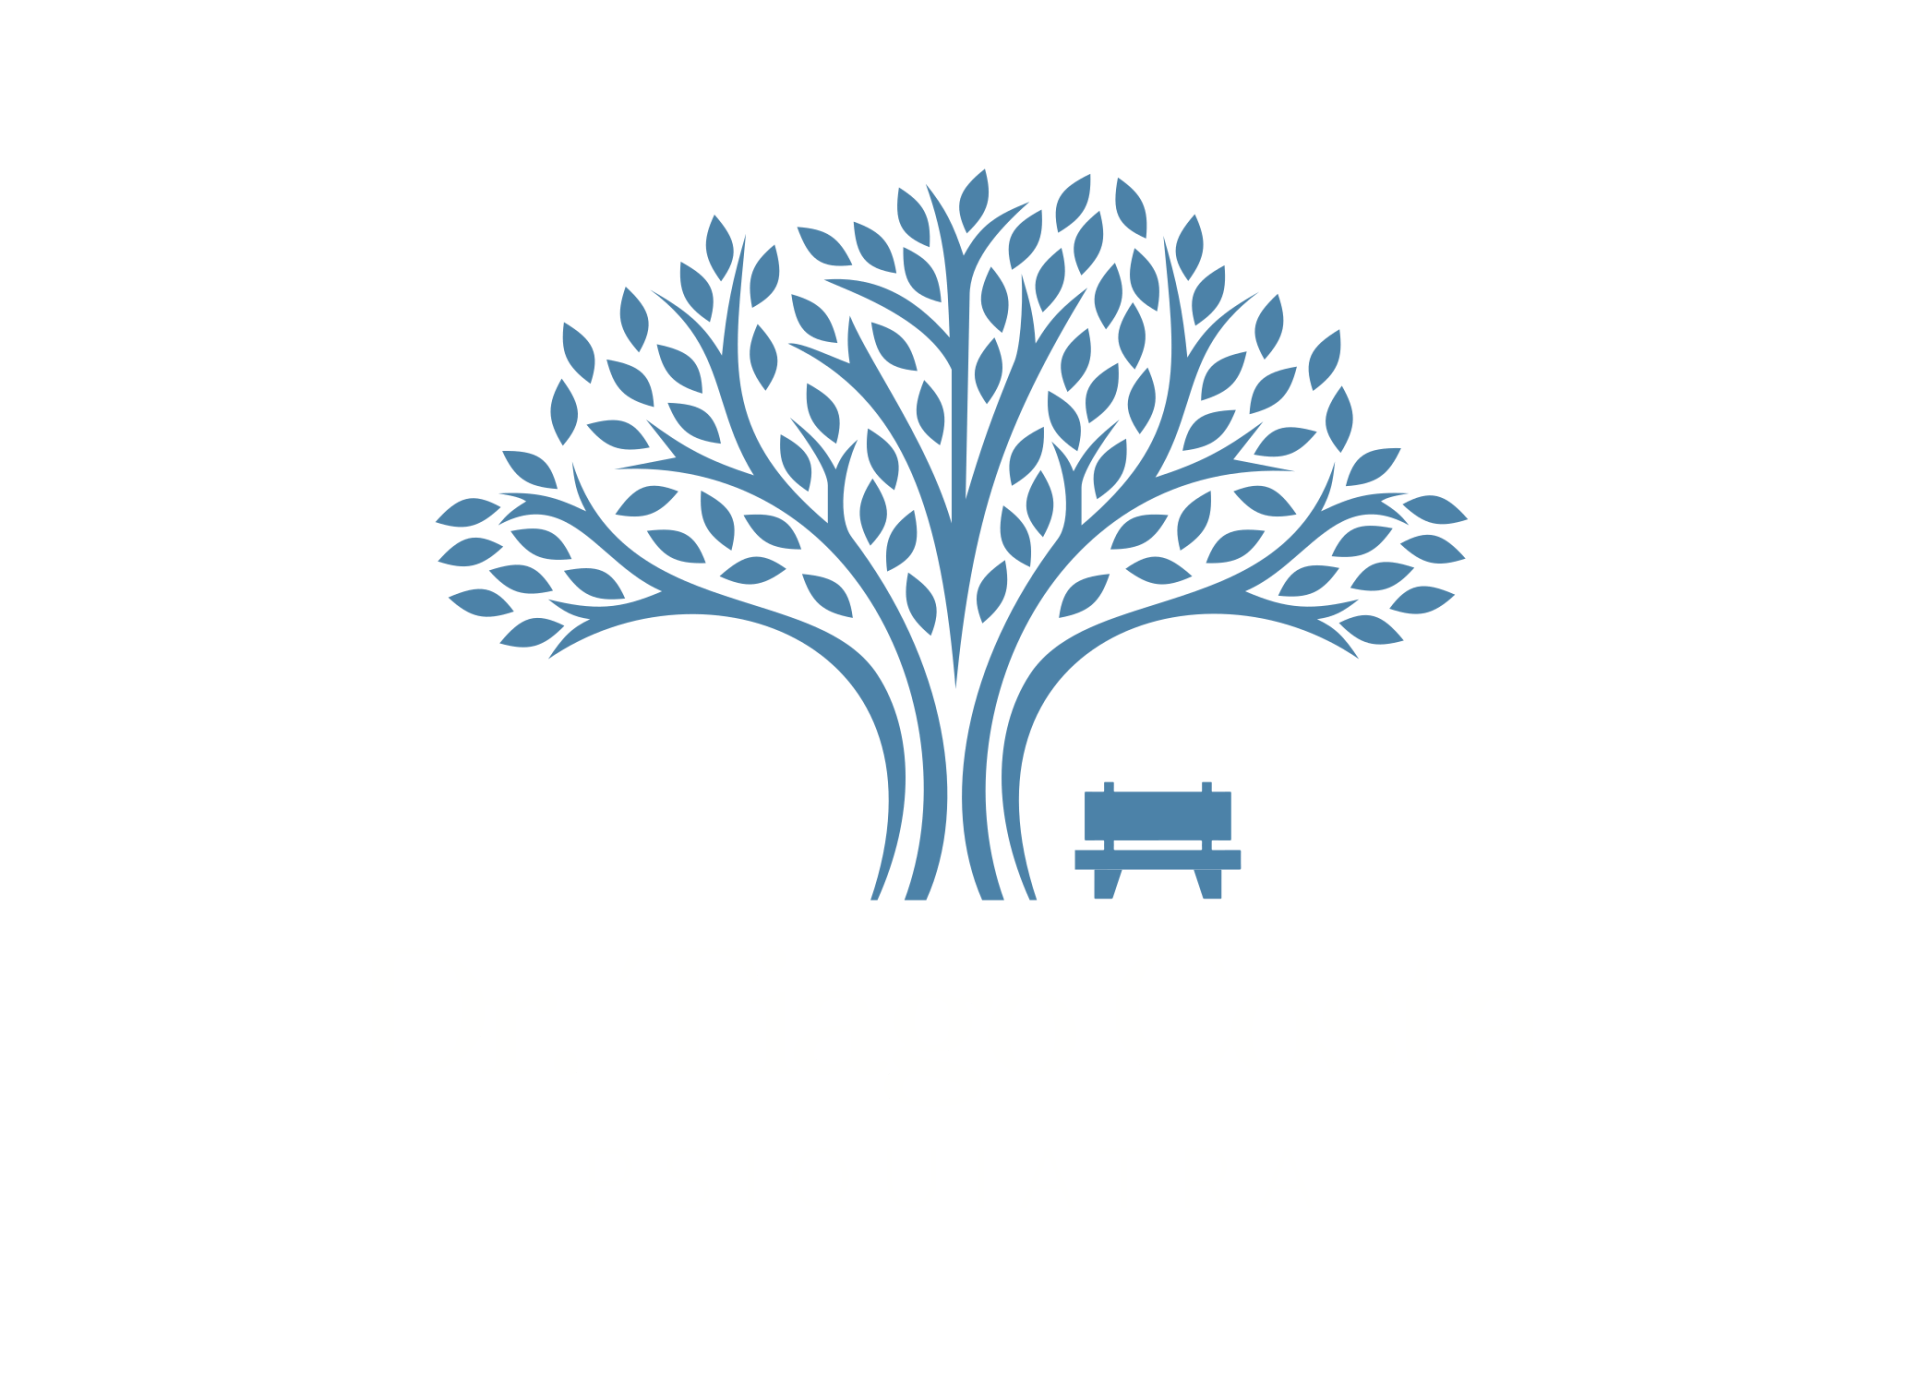 Dr. Tiago Costa - Psiquiatra